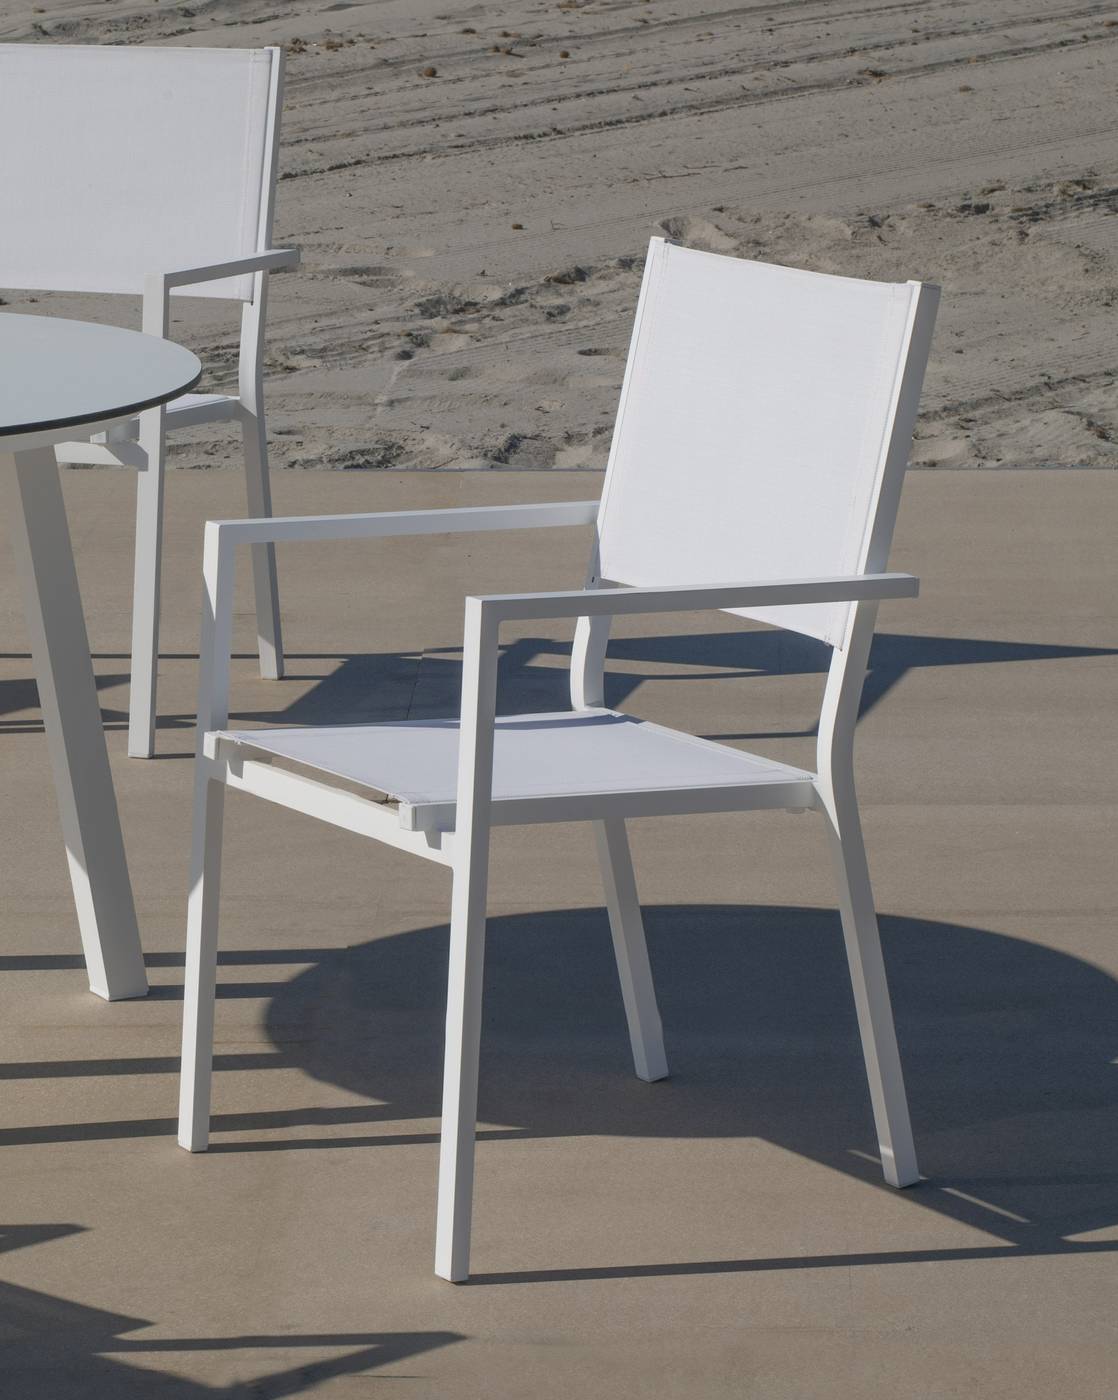 Set Córcega-160-4 Córcega - Conjunto de aluminio para jardín: Mesa rectangular con tablero HPL de 160 cm + 4 sillones de textilen. Colores: blanco y antracita.